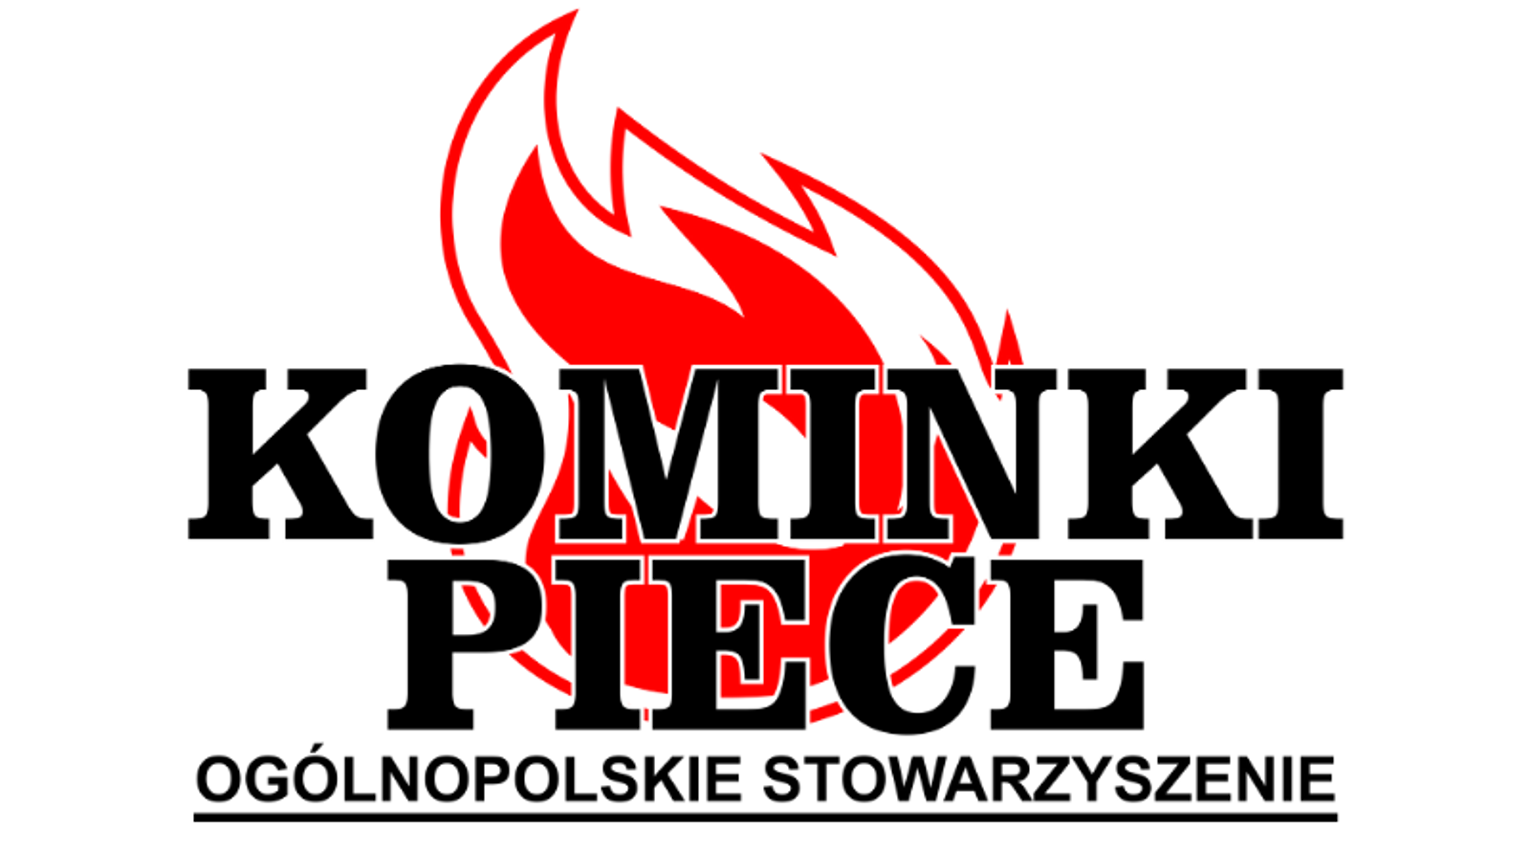 Logotyp ogólnopolskiego stowarzyszenia Kominki i Piece